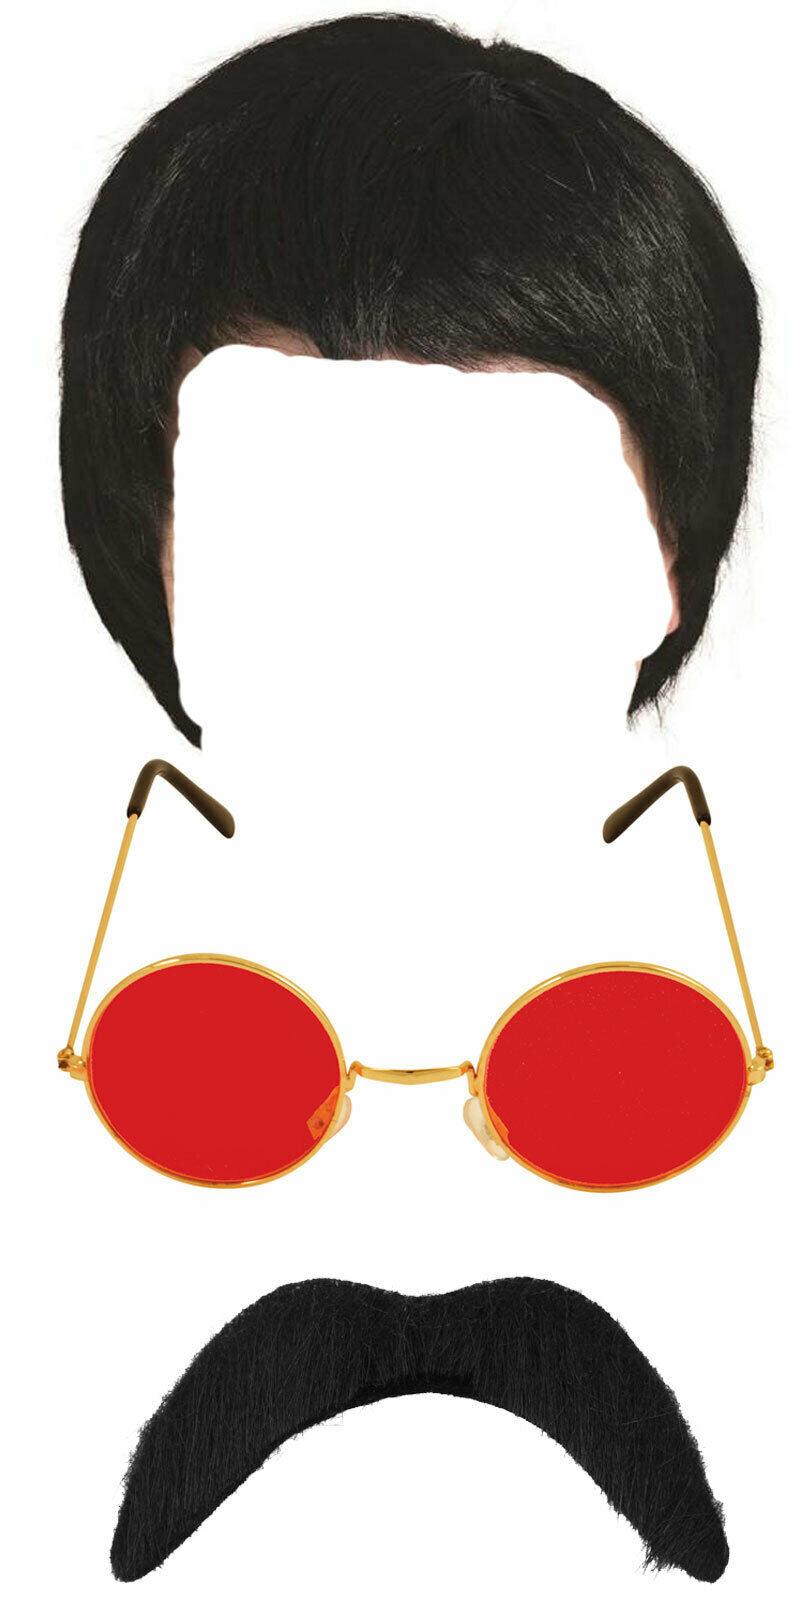 Black Wig Mustache Red Lens Glasses Groovy 60's Abbey Rock Star Fancy Dress Kit - Labreeze